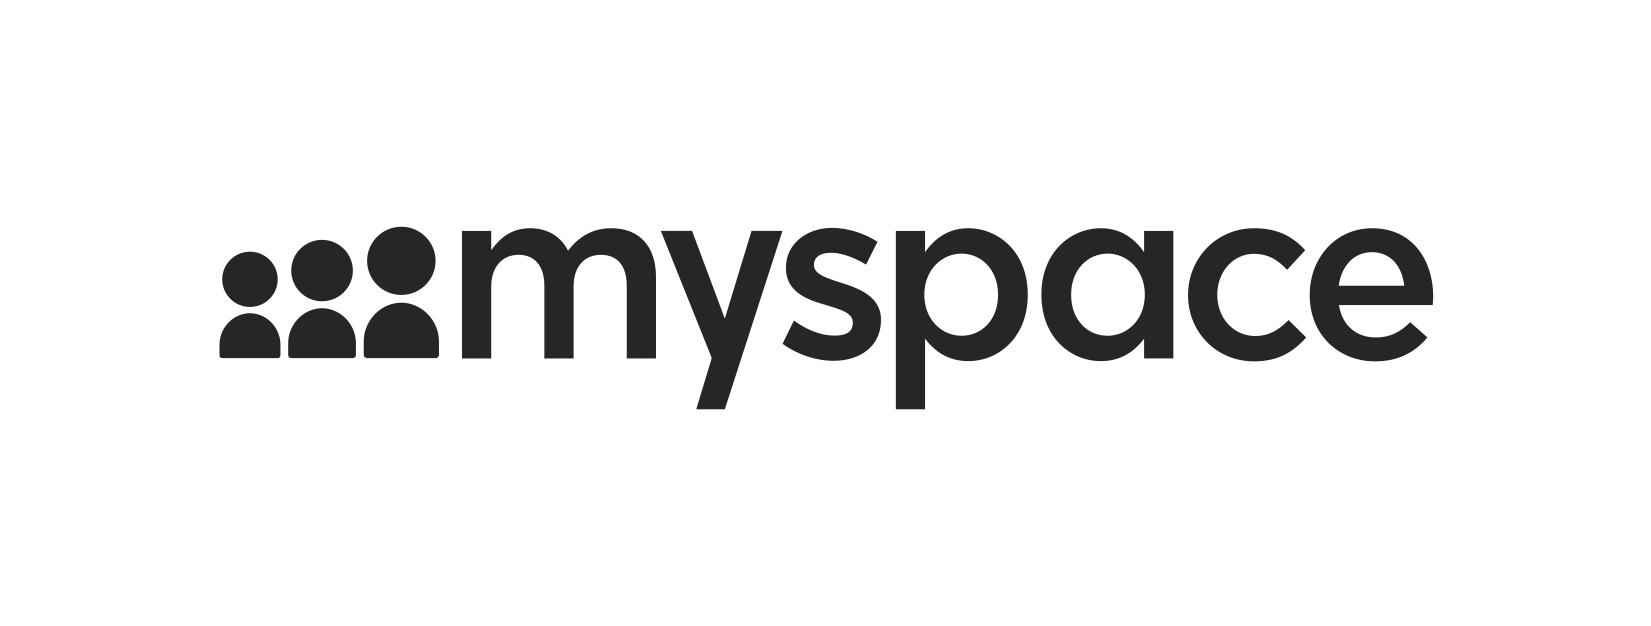 Myspace App Logo - Myspace Announces Launch of New Platform Across Desktop and Mobile ...